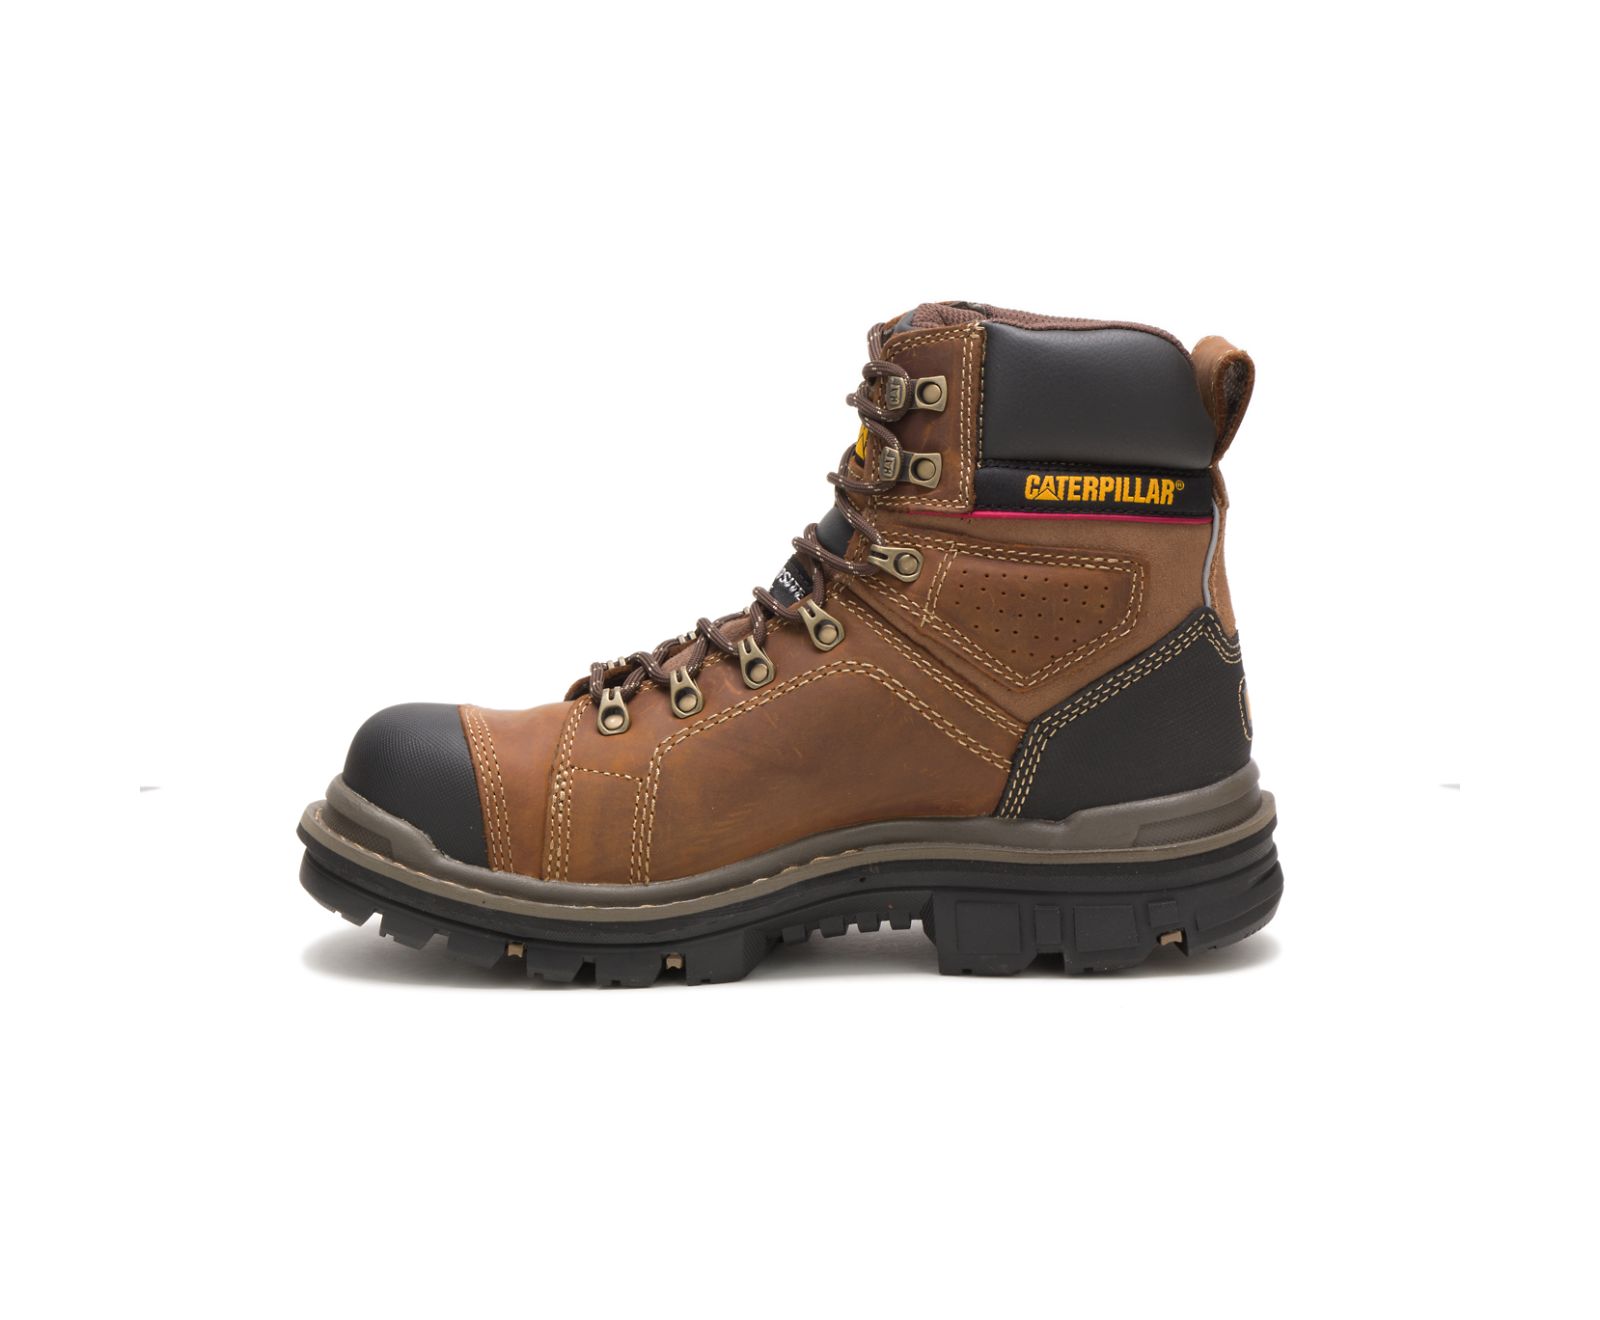 Hauler 6" Waterproof Composite Toe Work Boots